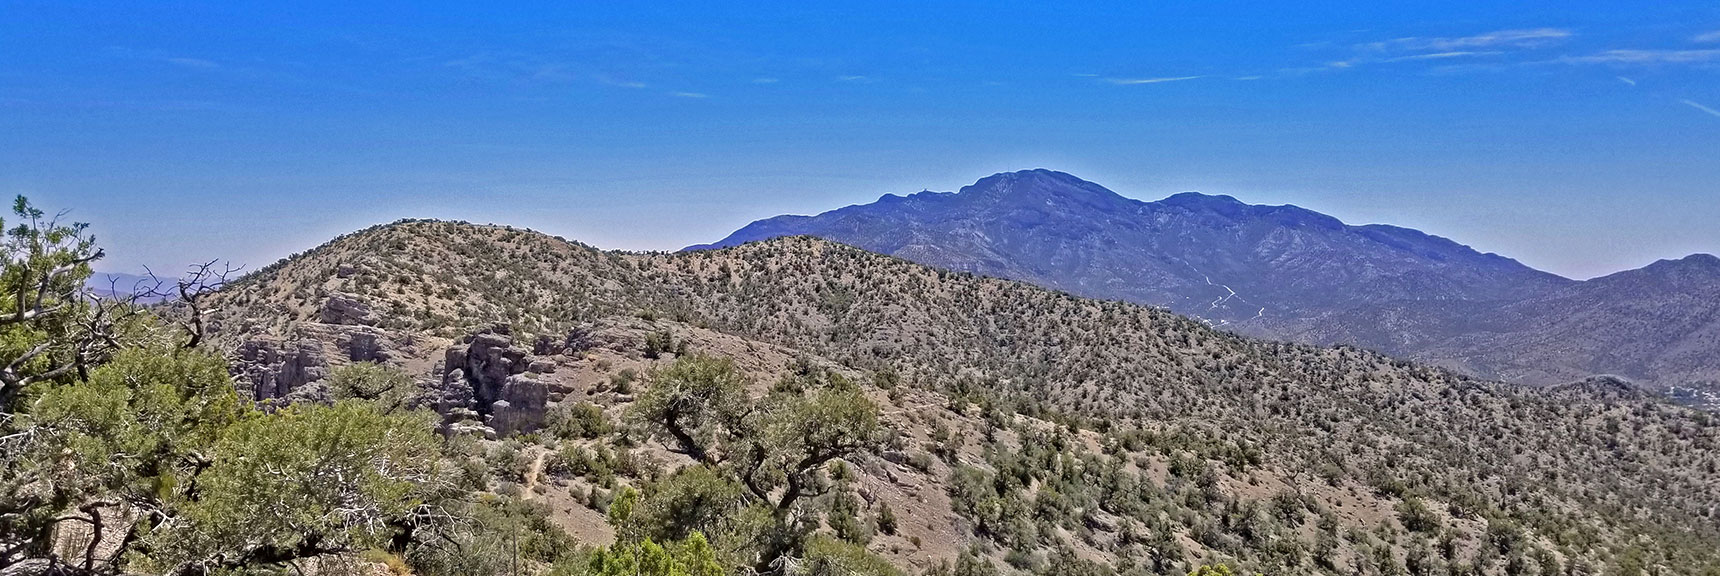 View South Across Ridgeline to Potosi Mountain | Rainbow Mountains Upper Crest Ridge, Nevada